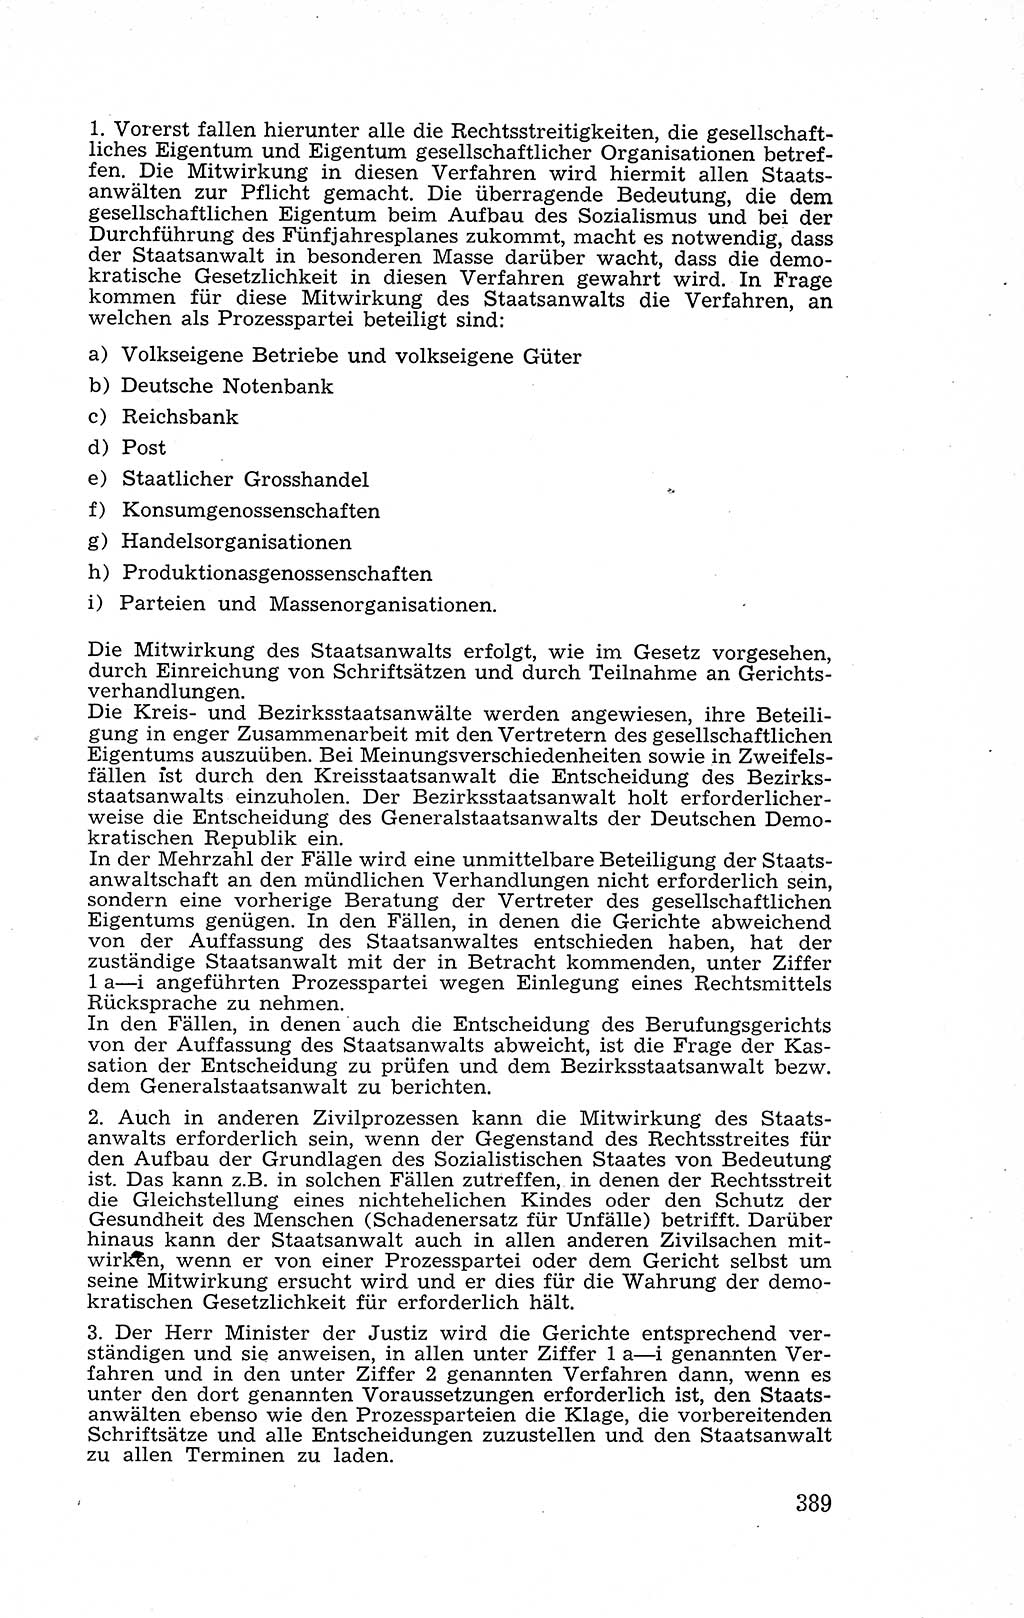 Recht in Fesseln, Dokumente, Internationale Juristen-Kommission [Bundesrepublik Deutschland (BRD)] 1955, Seite 389 (R. Dok. IJK BRD 1955, S. 389)